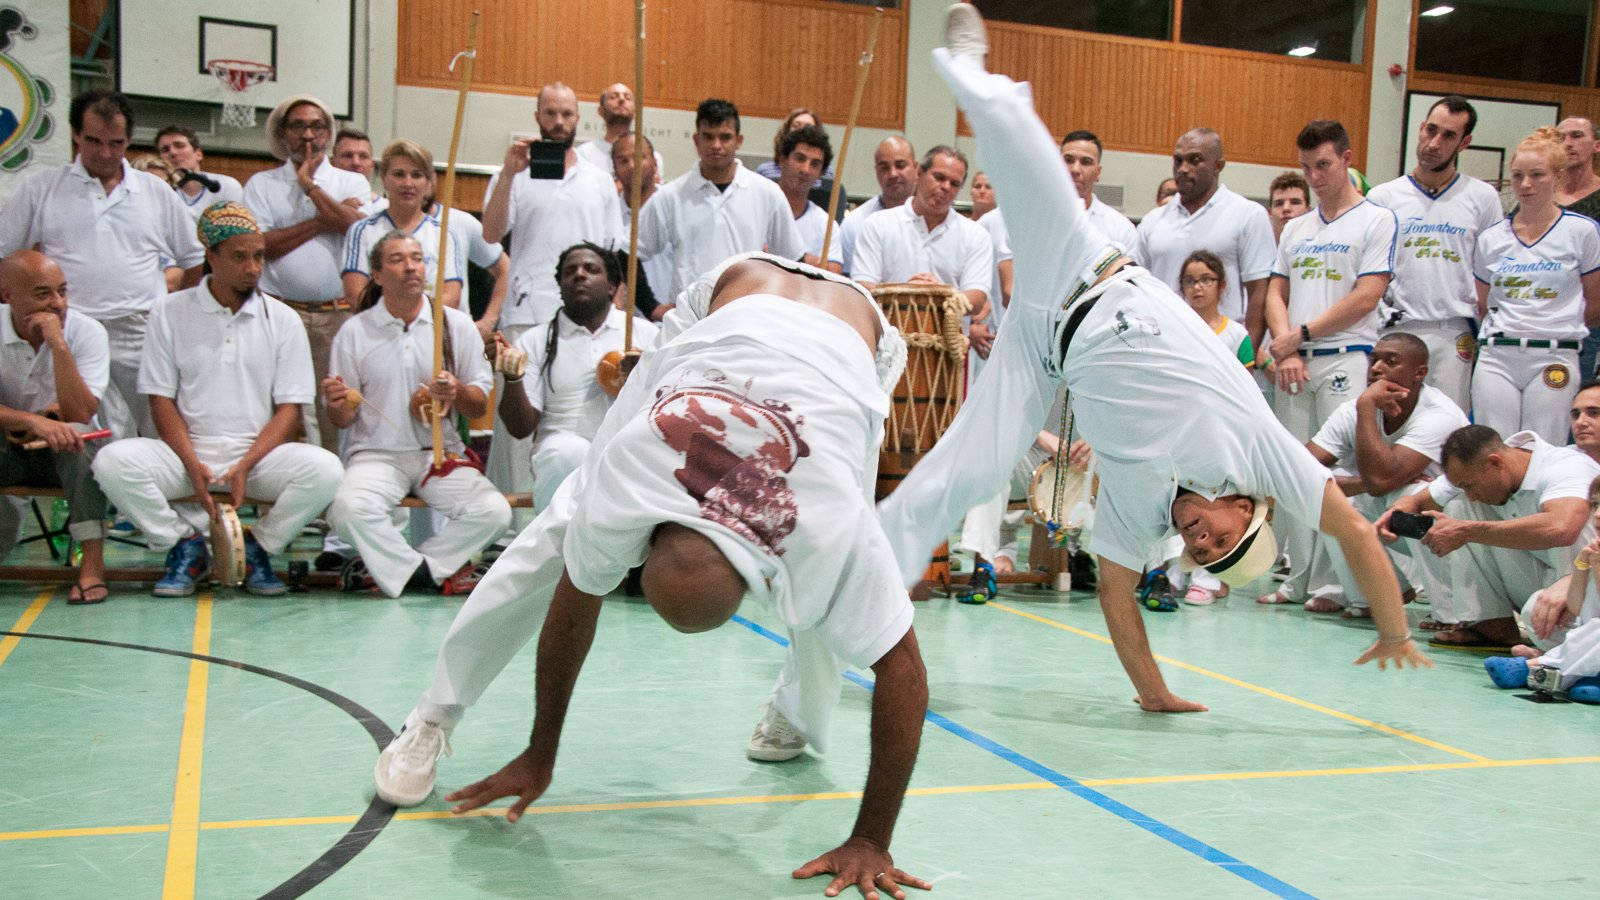 (c) Capoeira-schule.de